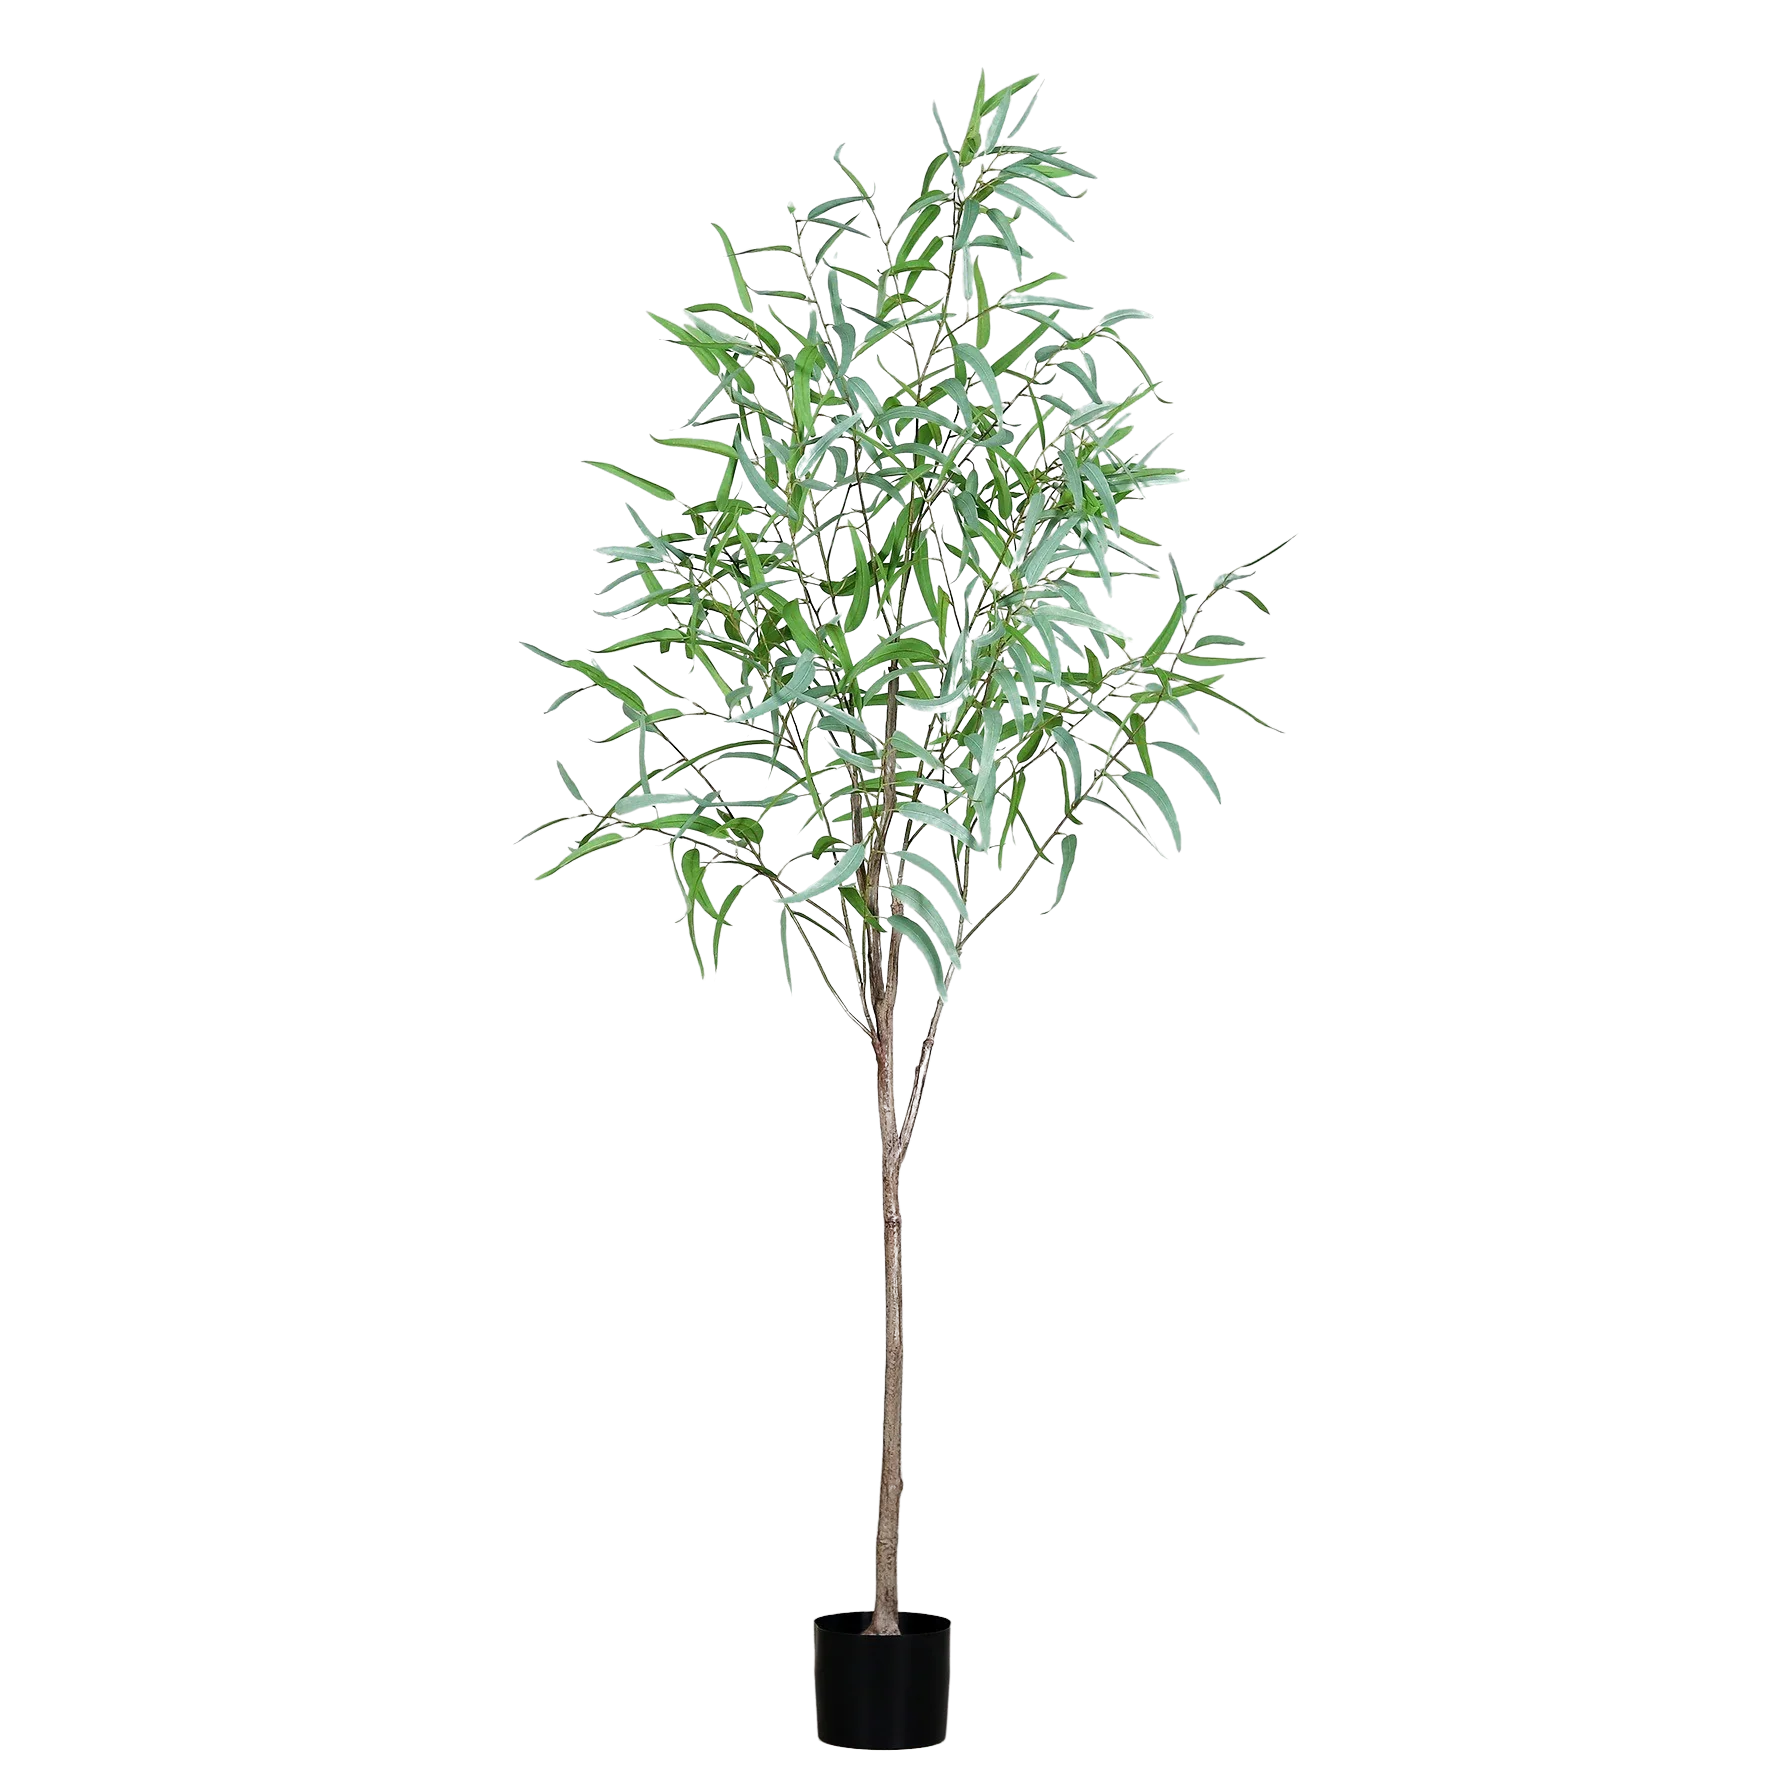 Hochwertiger Eukalyptus künstlich auf transparentem Hintergrund mit echt wirkenden Kunstblättern in natürlicher Anordnung. Künstlicher Eukalyptus - Micha hat die Farbe Grün und ist 200 cm hoch. | aplanta Kunstpflanzen